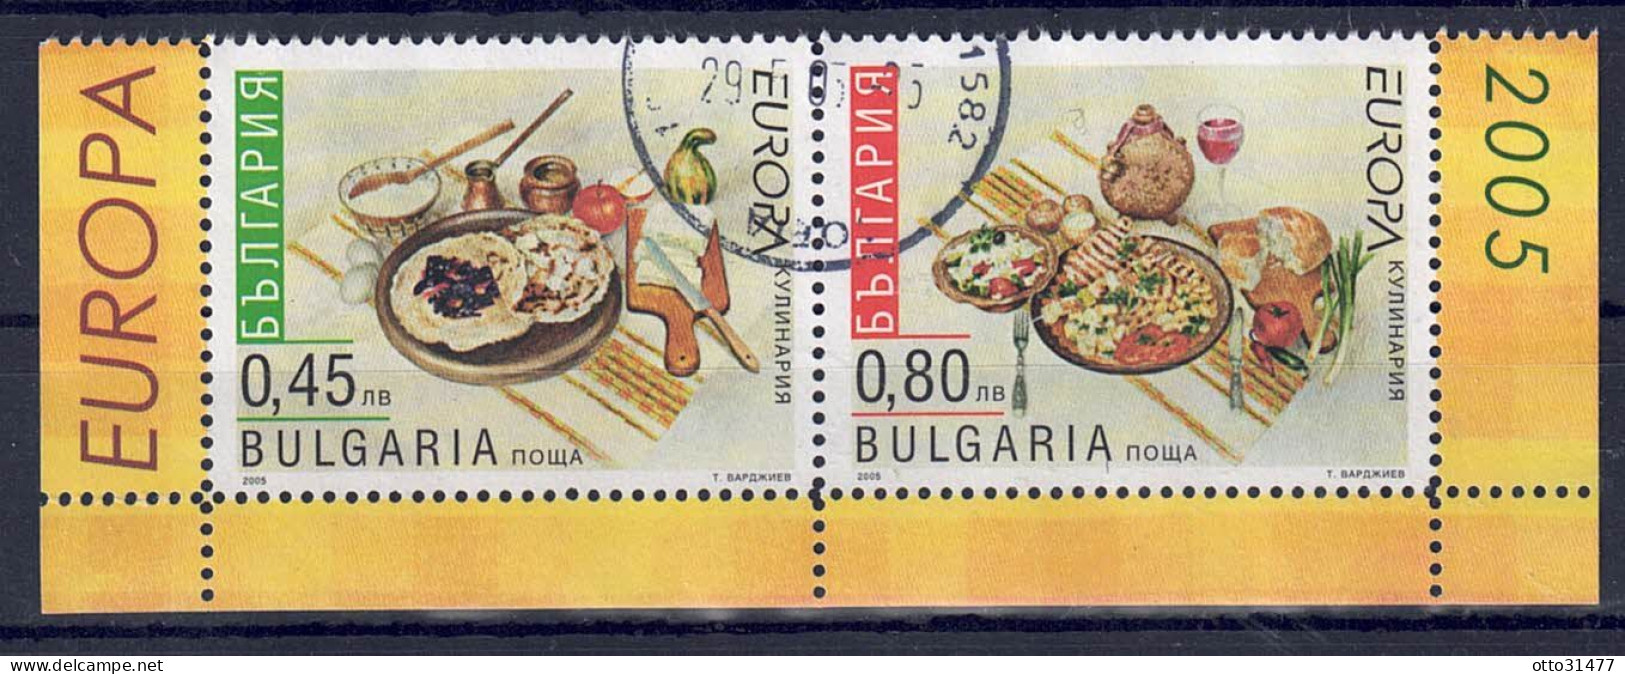 Bulgarien 2005 - EUROPA - Gastronomie, Nr. 4704 C + 4705 C Zd., Gestempelt / Used - Oblitérés